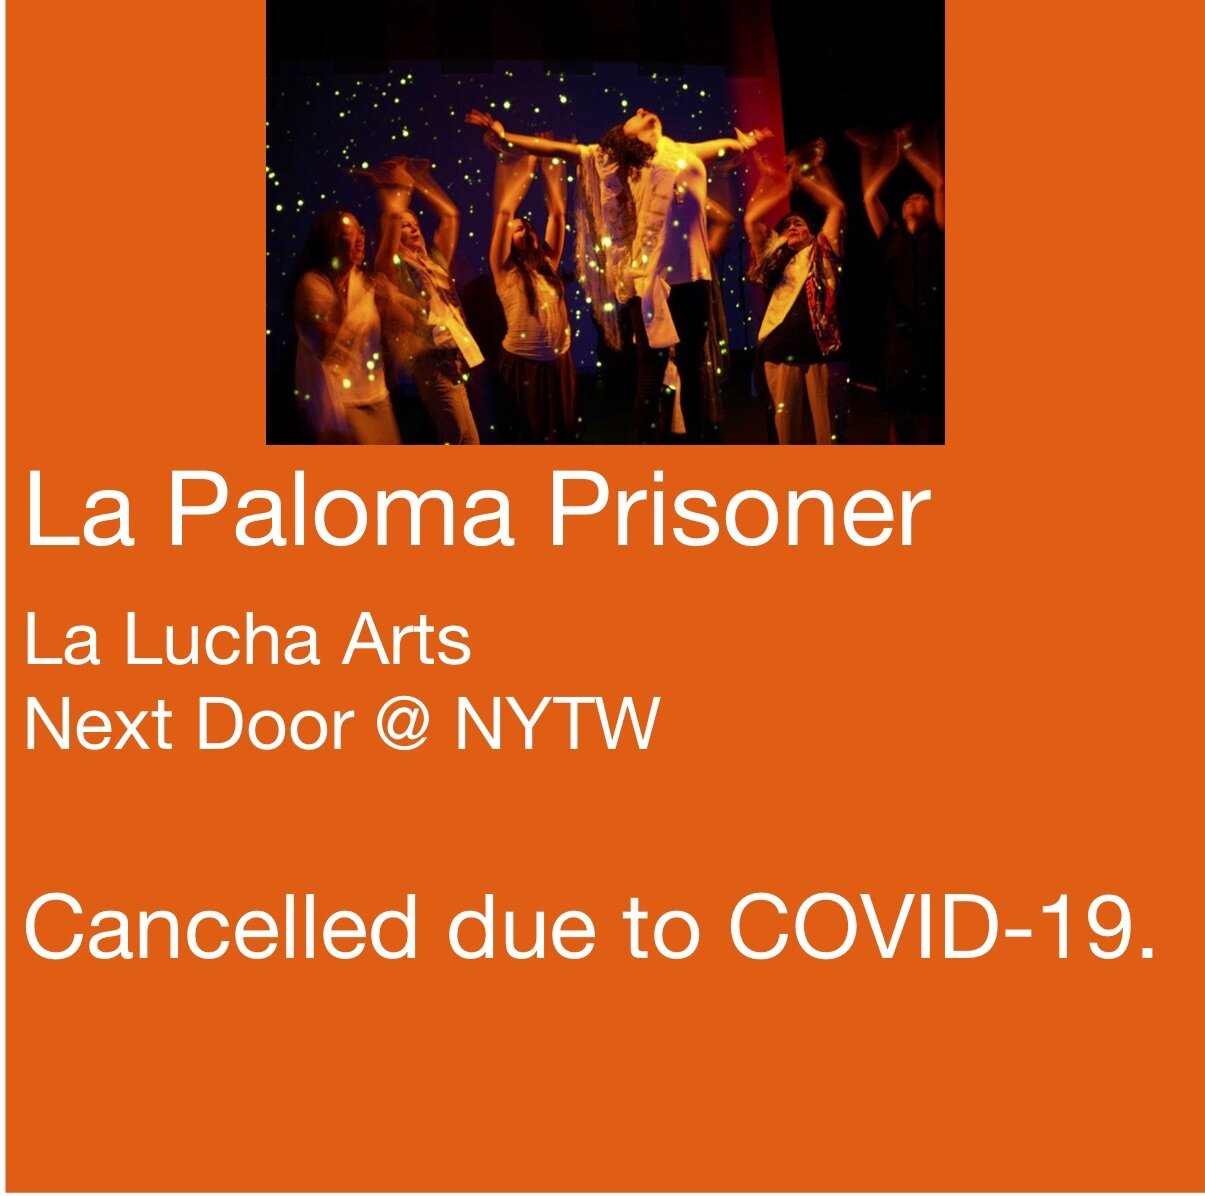 La Paloma Prisoner